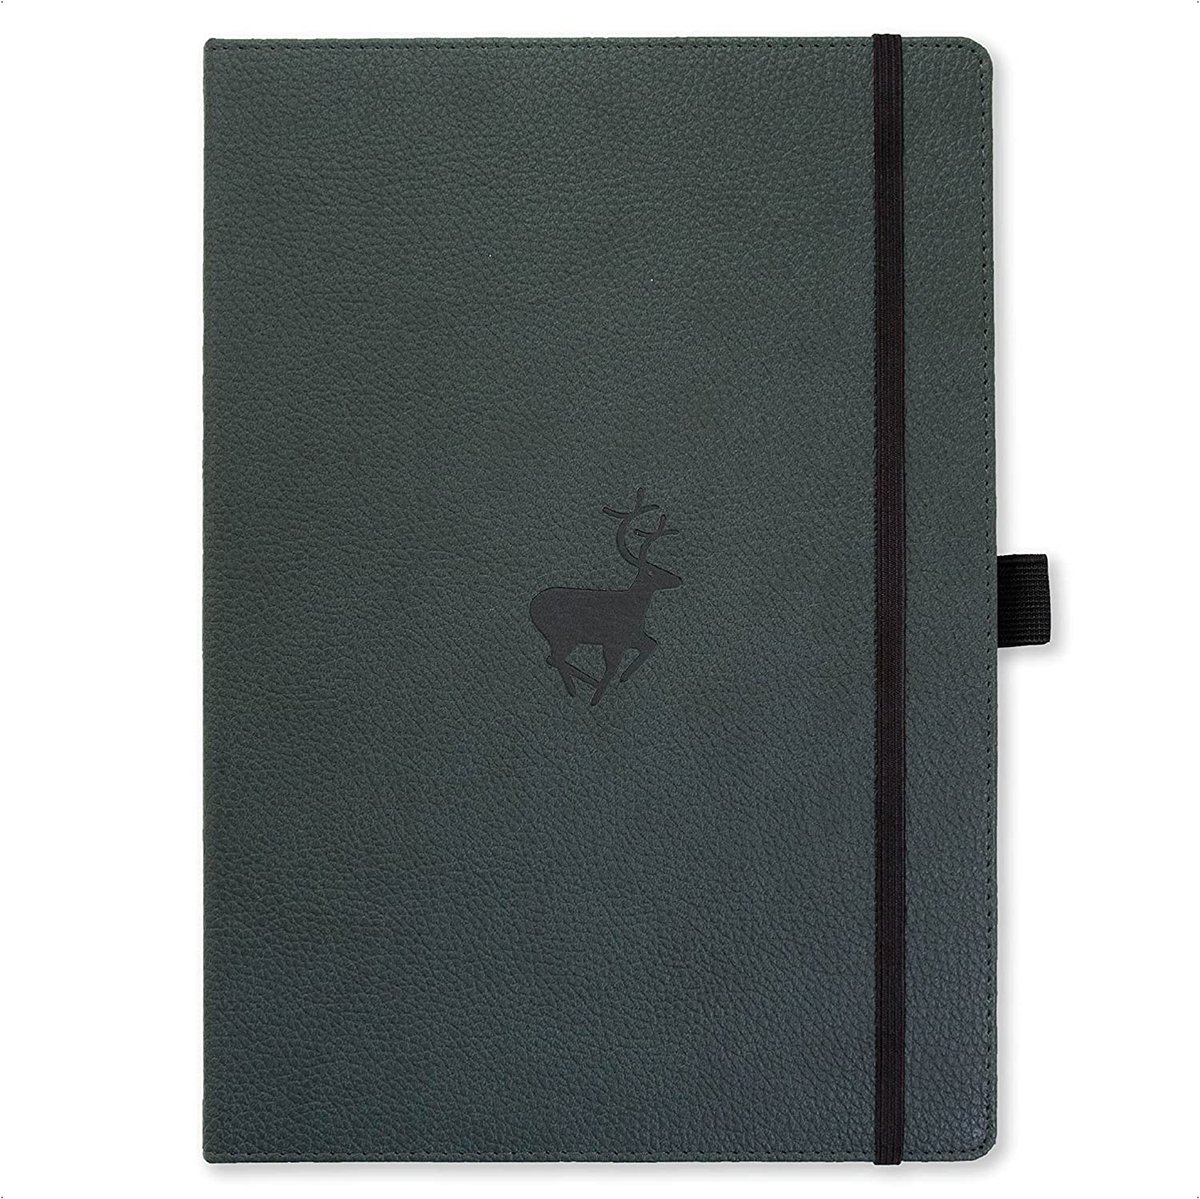 Dingbats* Wildlife A4 Notitieboek - Green Deer Blanco - Bullet Journal met 100 gsm Inktvrij Papier - Schetsboek met Harde Kaft, Elastische Sluiting en Bladwijzer